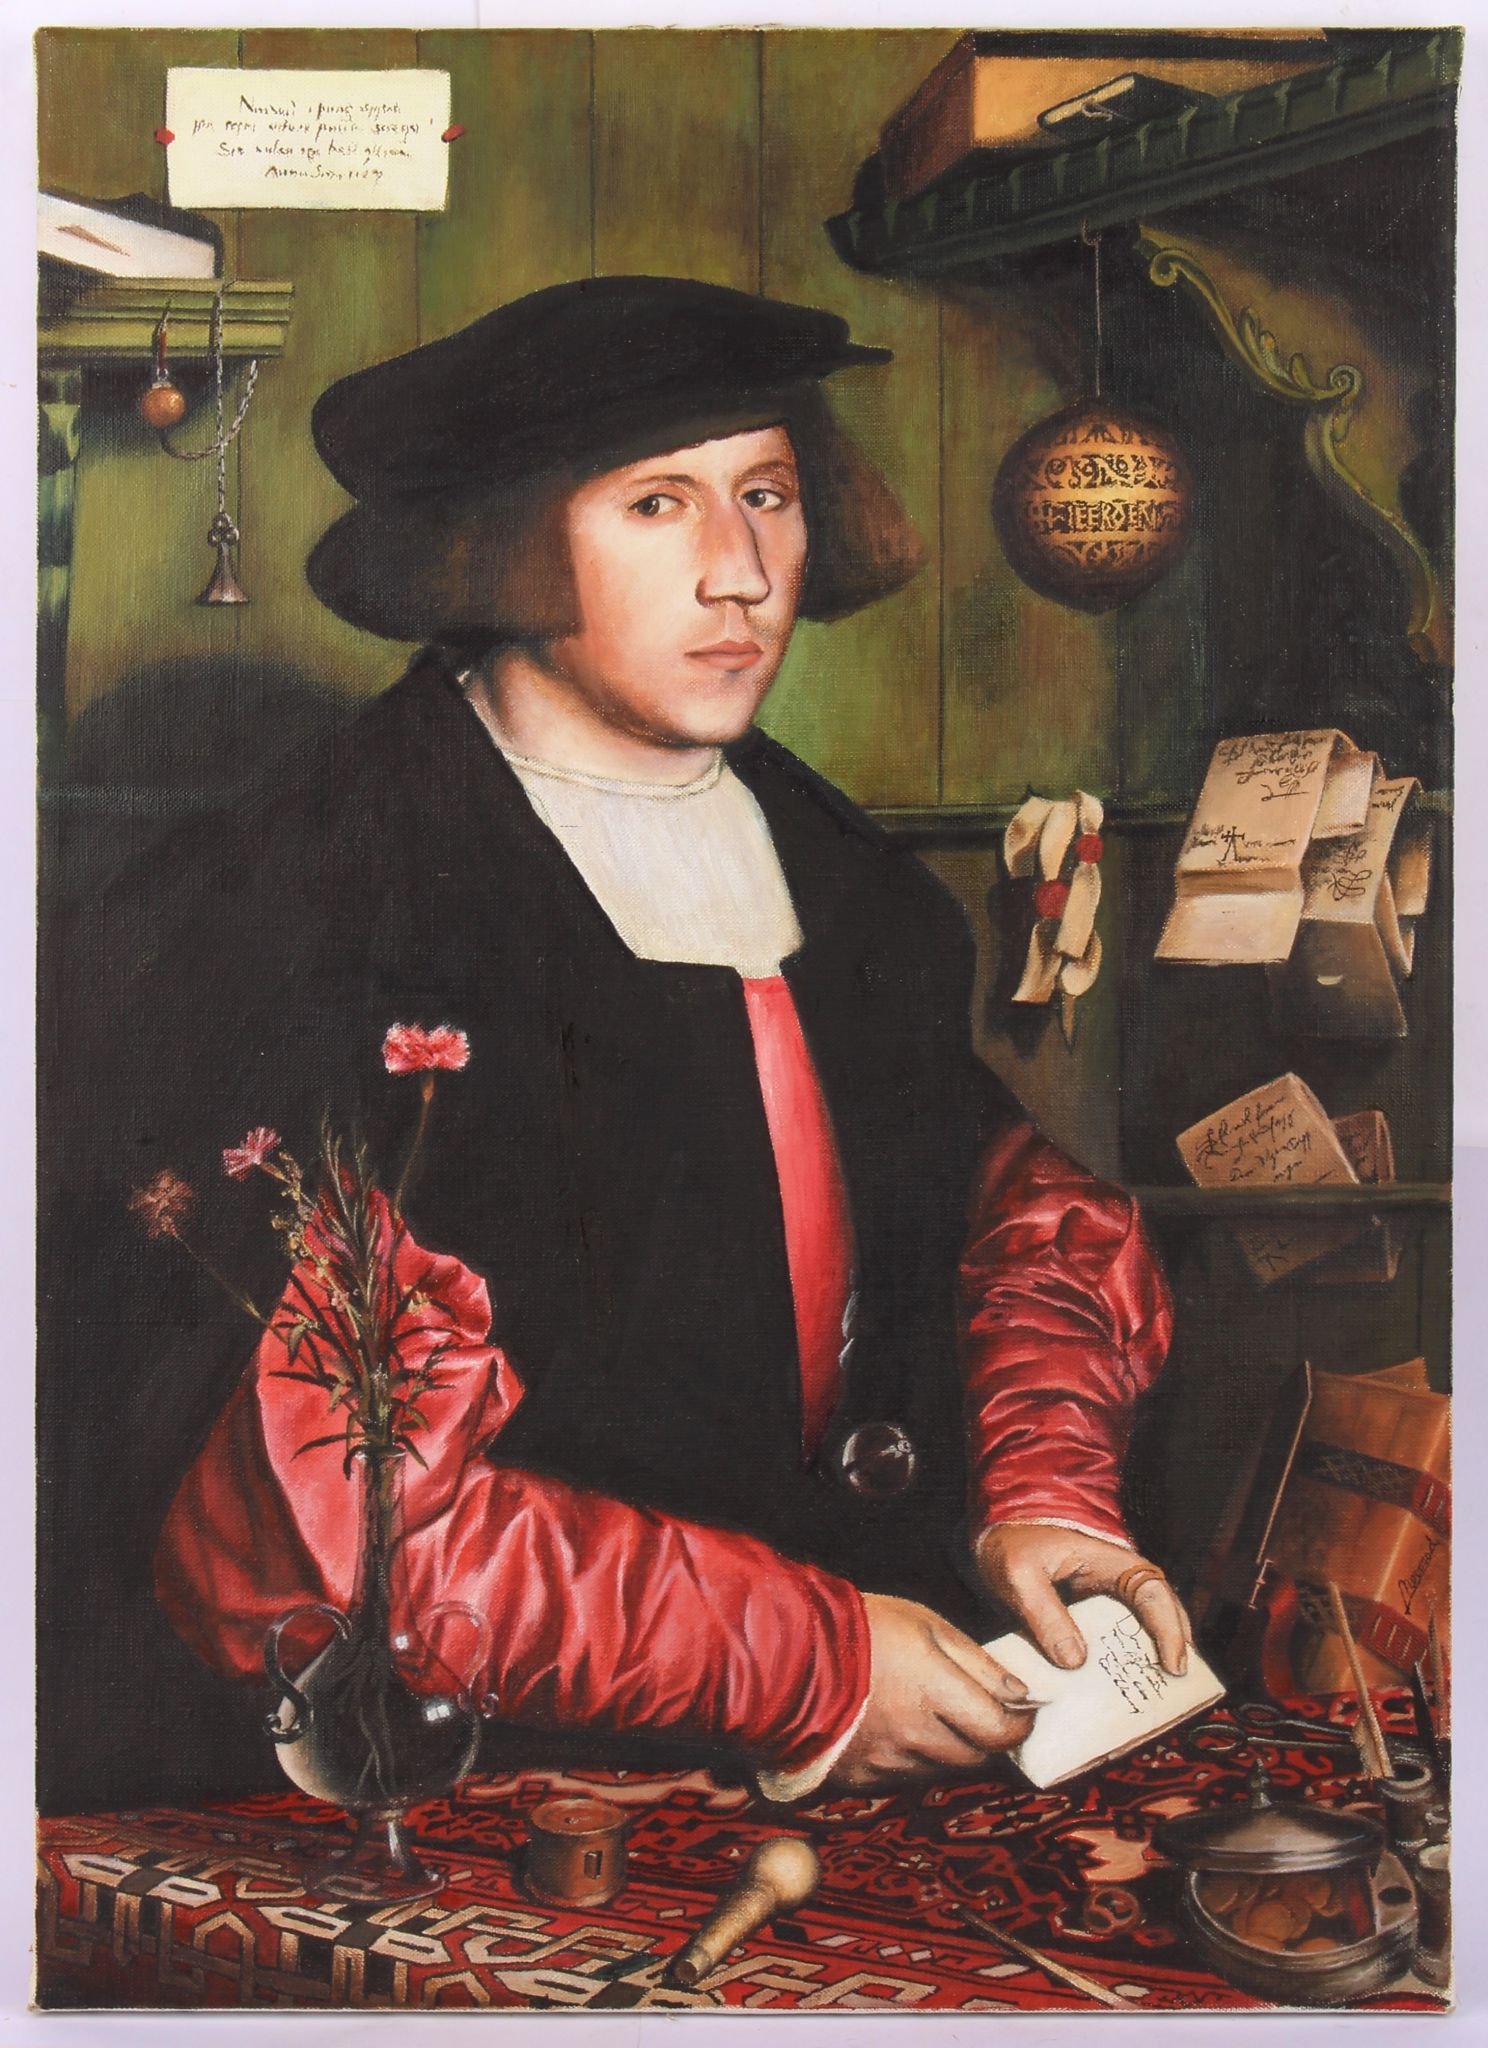 Mans Holbein mladší- Obchodník George Gies (kopie)